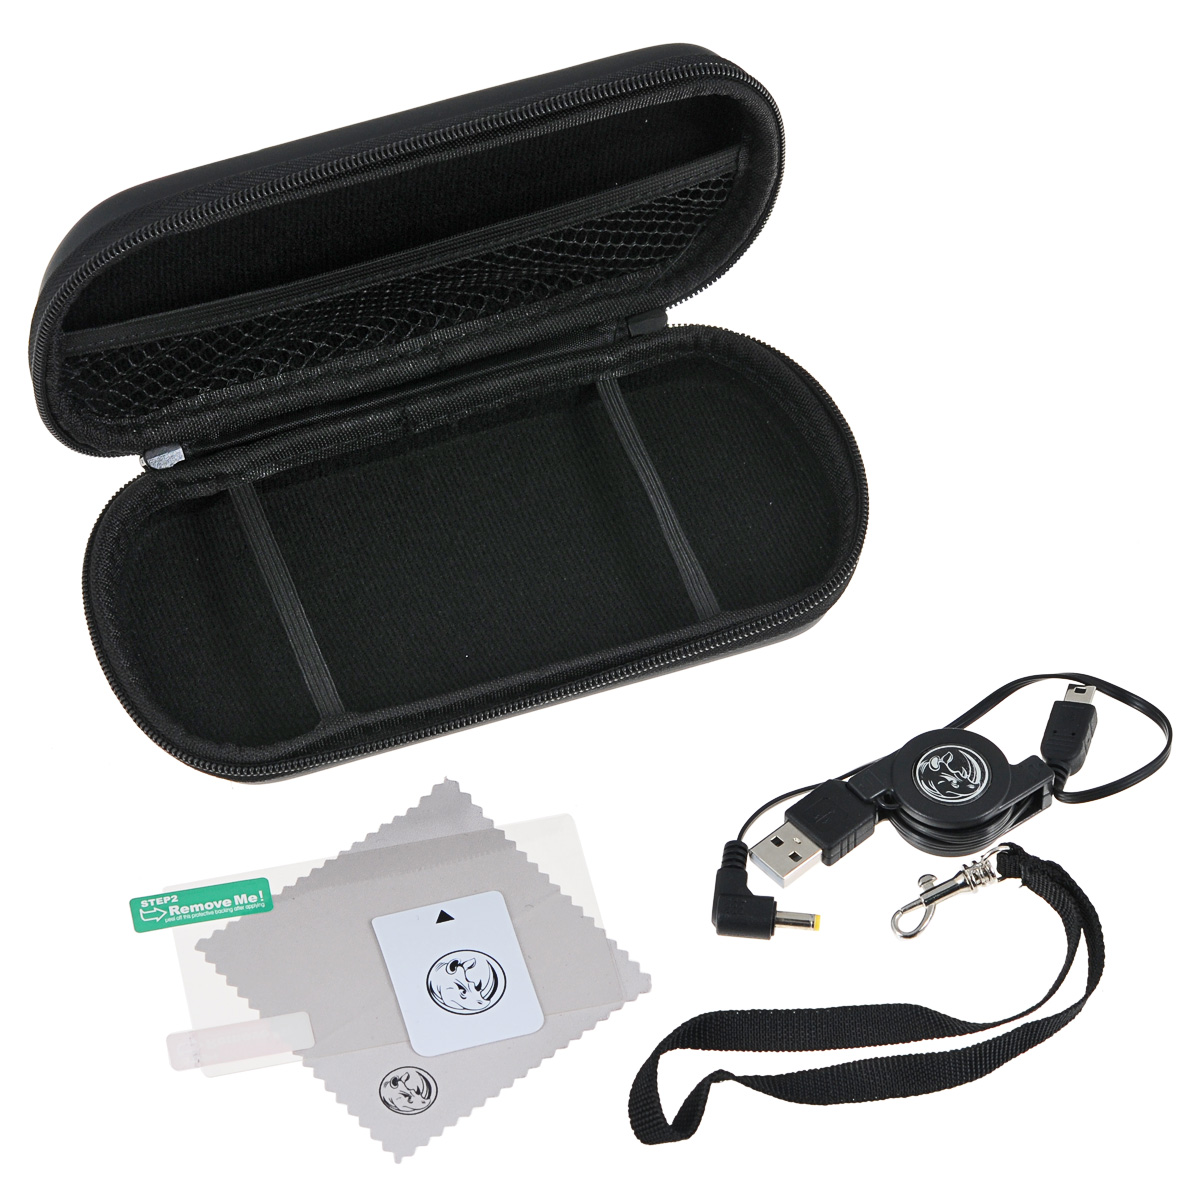 Black Horns Kit 5 in 1 набор аксессуаров для Sony PSP E1000/2000/3000BH-PSE0804(R)Набор аксессуаров Black Horns Kit 5 in 1 для Sony PSP E1000/2000/3000. В комплект входит полиуретановый чехол для хранения и транспортировки портативной игровой консоли. Для зарядки устройства в набор включен сворачиваемый кабель USB (2 в 1). Салфетка из микрофибры поможет вам очистить поверхность приставки от пыли и грязи. А пленка для защиты экрана убережет его от царапин и потертостей. Для ее наклеивания предназначена специальная карточка для удаления пузырьков воздуха.